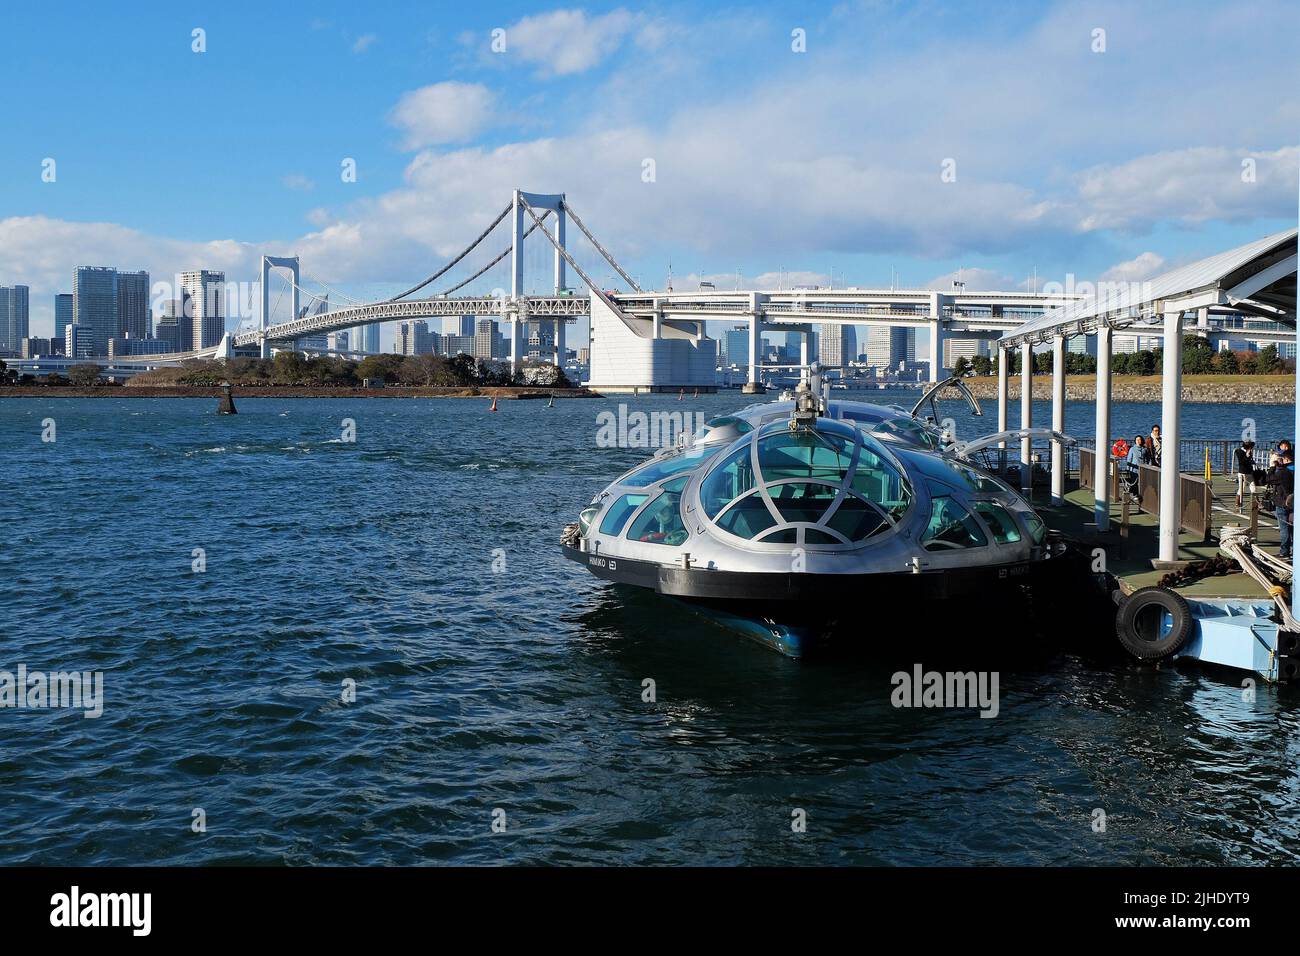 Architecture extérieure et décoration de style urbain typique de croisière en bateau à travers le pont et la rivière Sumida avec ciel bleu ciel nuageux - Tokyo, Japon Banque D'Images